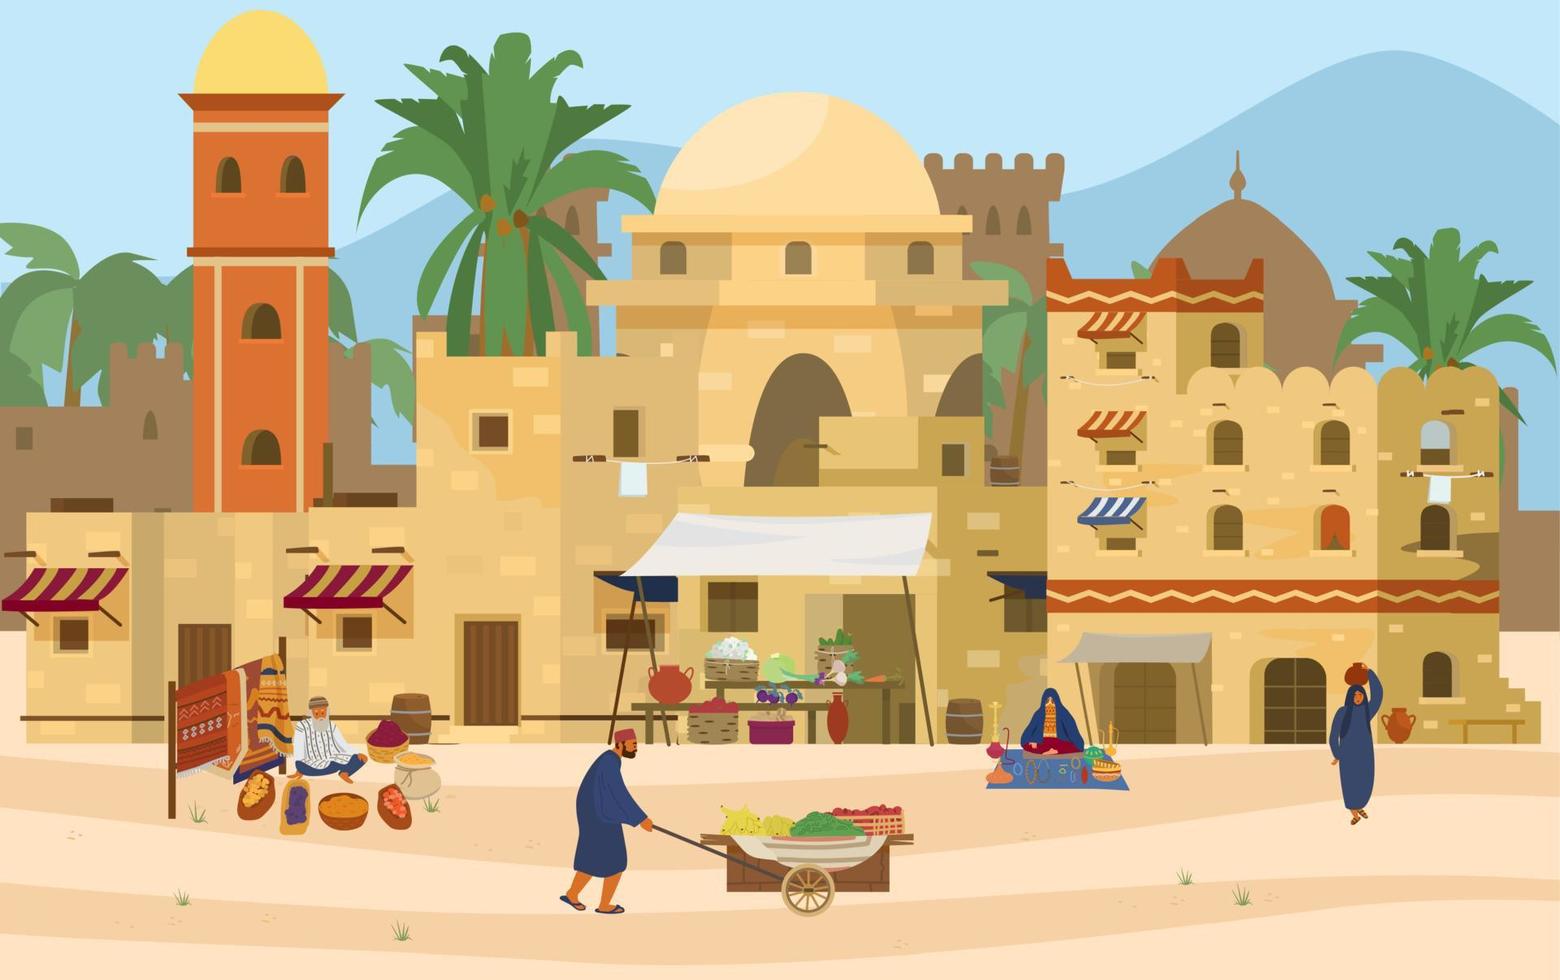 ilustração em vetor de cena do Oriente Médio. cidade antiga árabe com casas e pessoas tradicionais de tijolos de barro. bazar asiático com tapetes, especiarias, frutas e legumes.